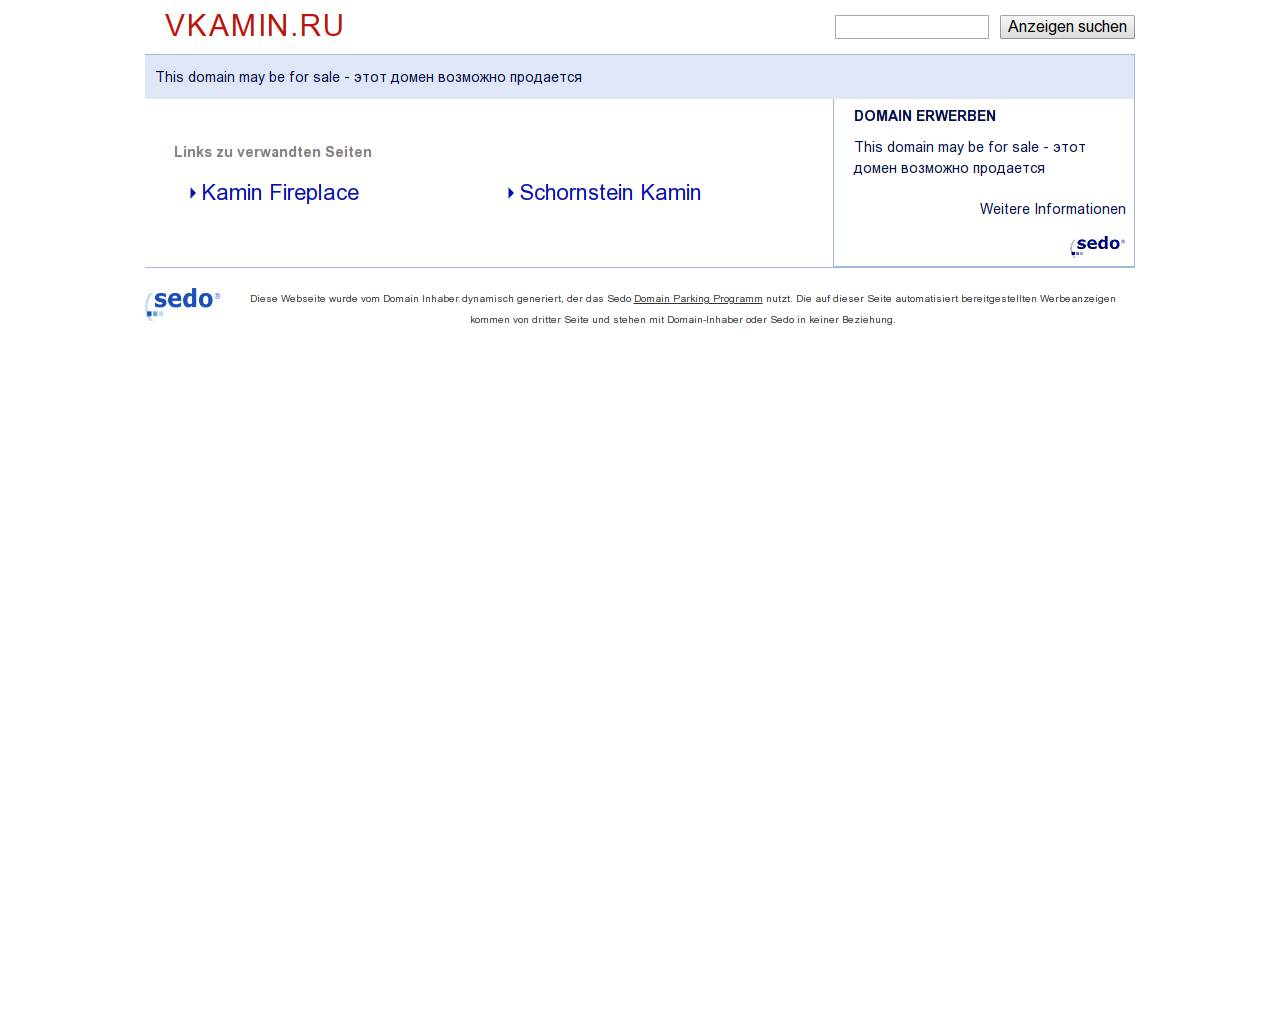 Изображение сайта vkamin.ru в разрешении 1280x1024